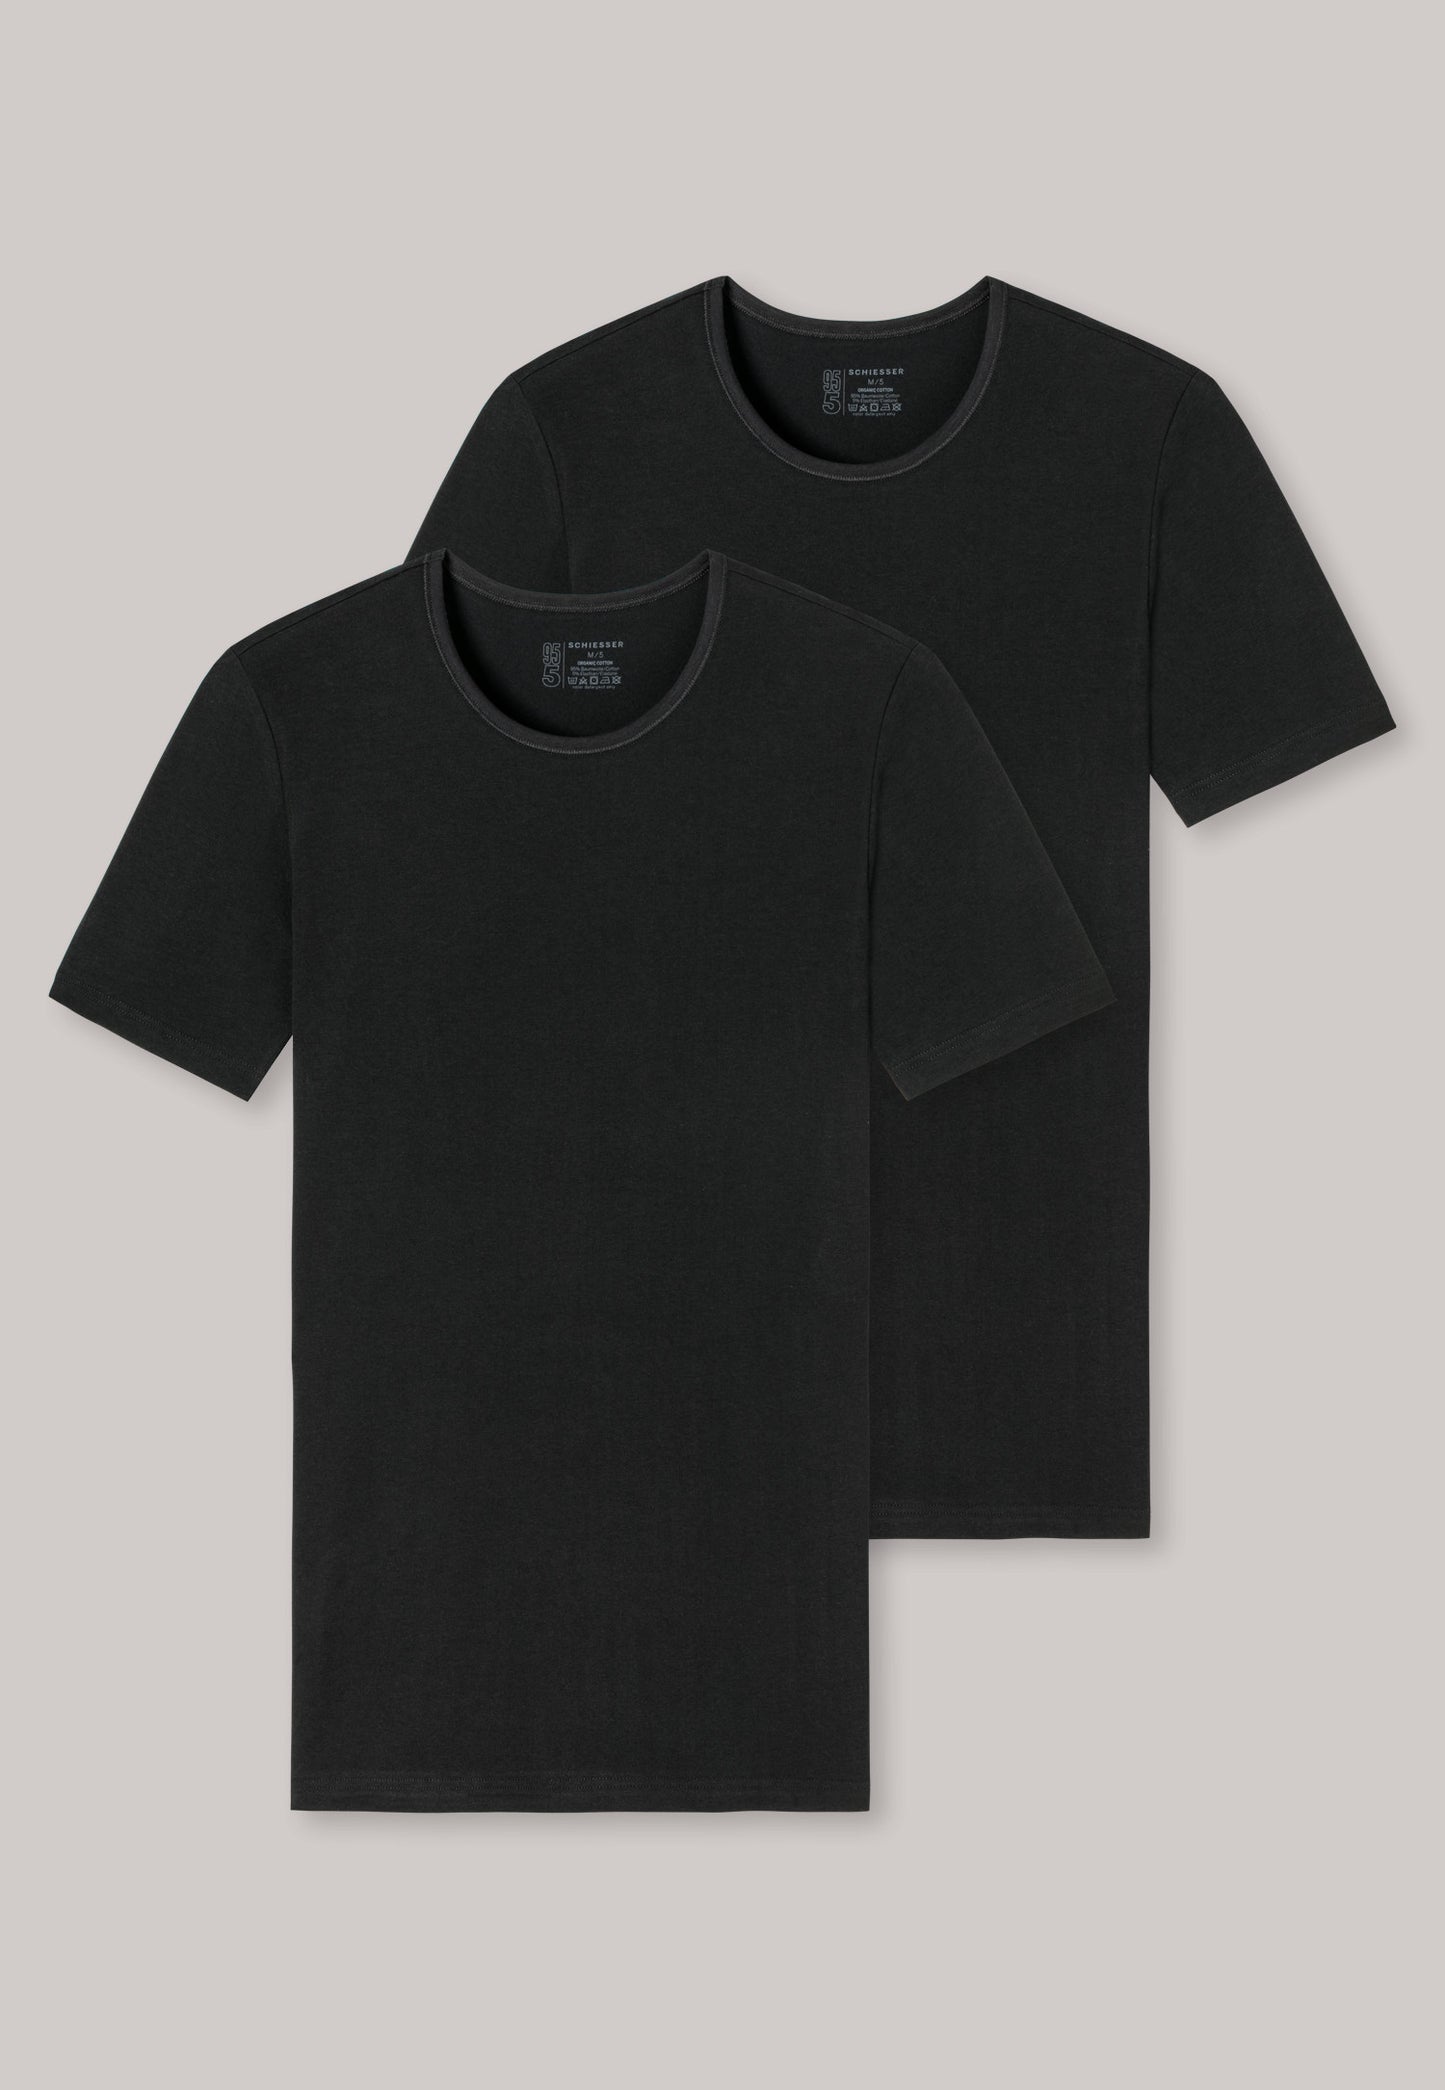 Tee-shirt manches courtes en coton bio, encolure arrondie, noir - 95/5